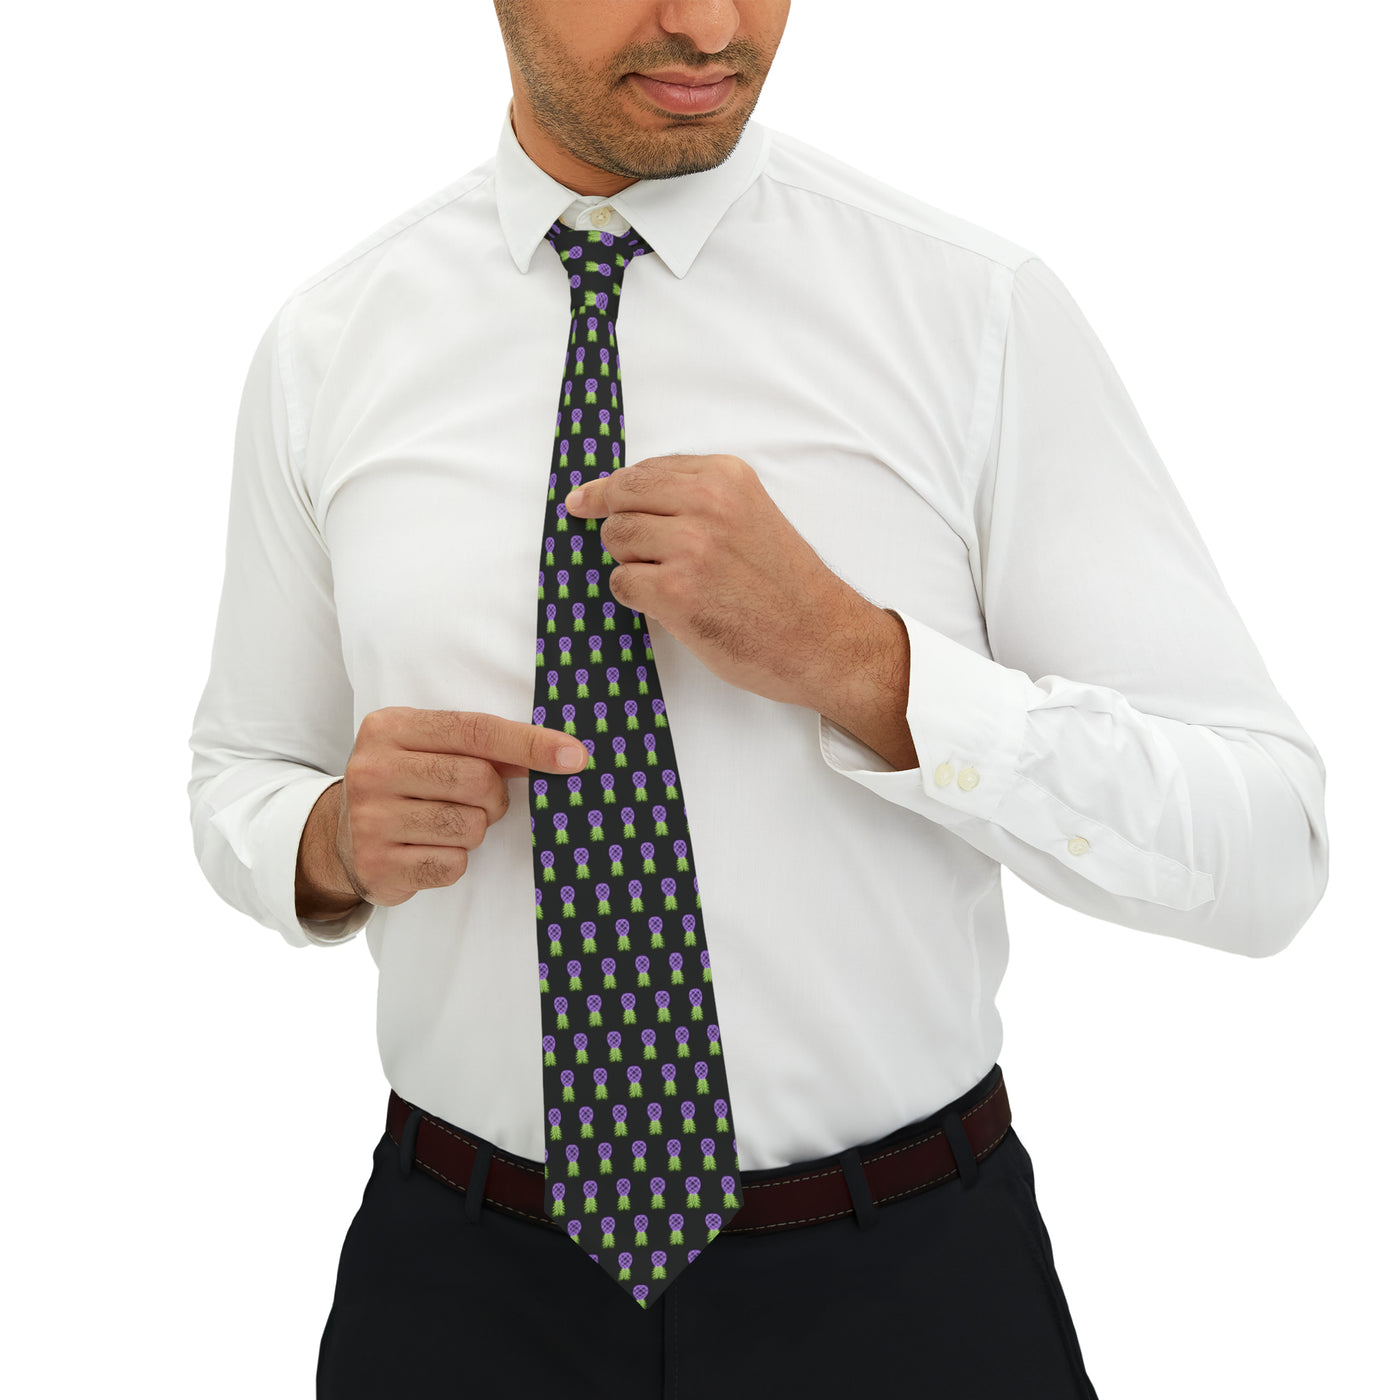 NEON EGGPLANT Necktie